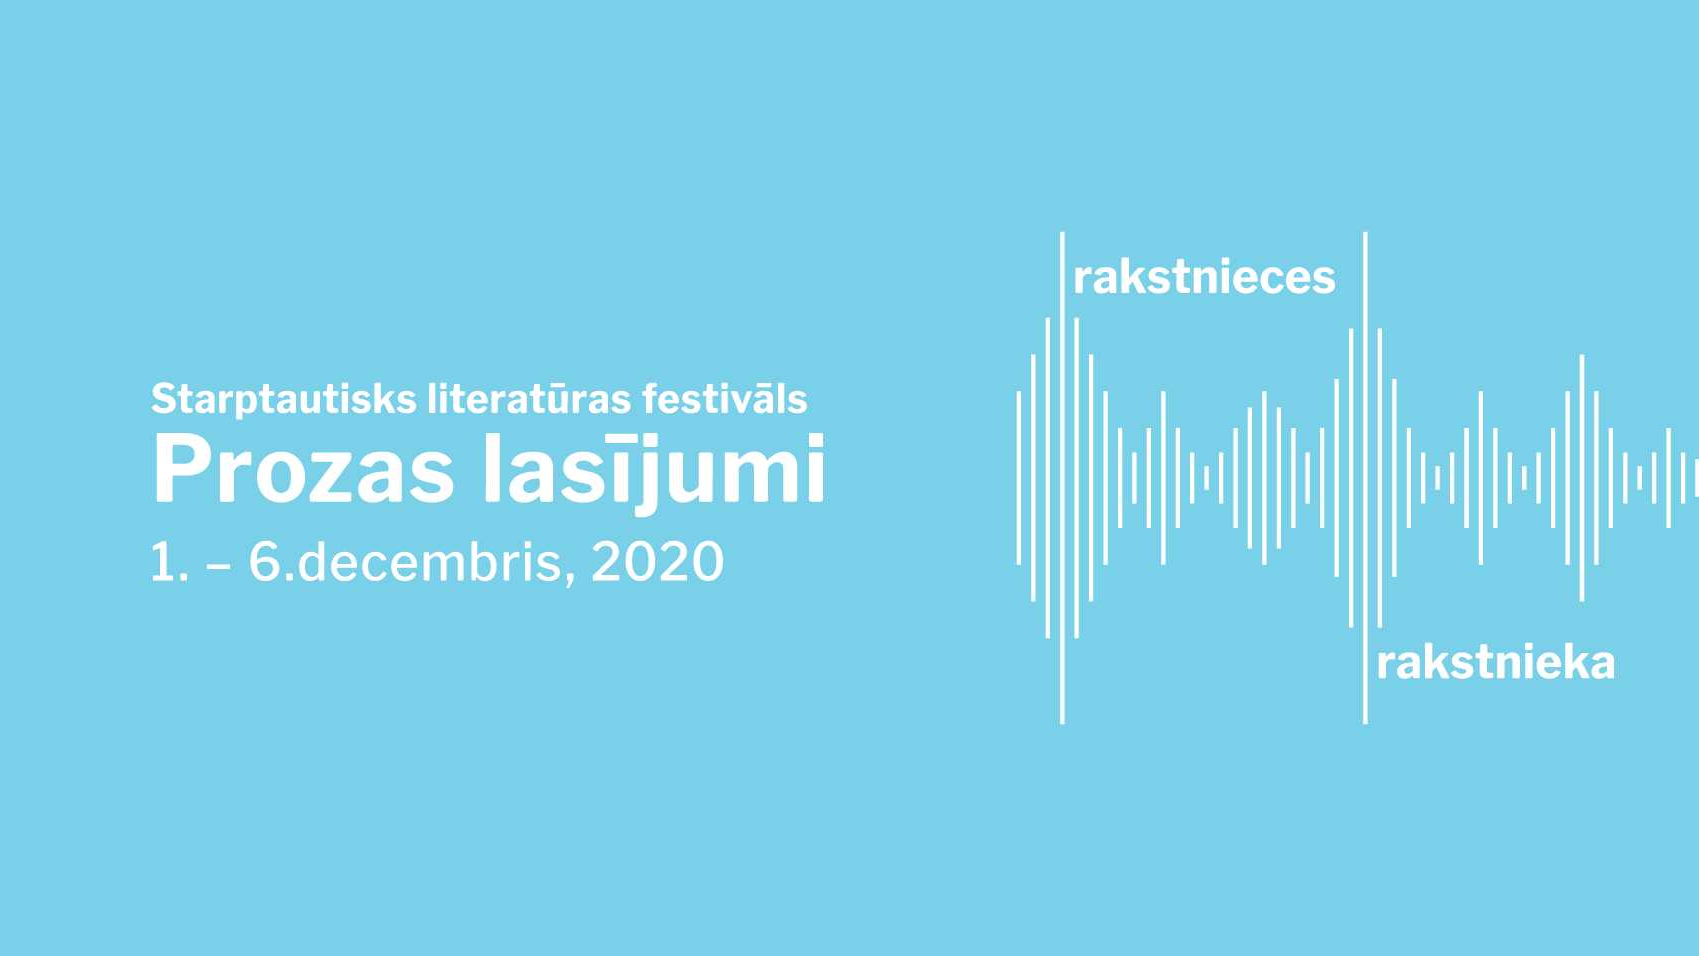 Starptautiskais literatūras festivāls “Prozas lasījumi” šogad piedāvā programmu attālināti